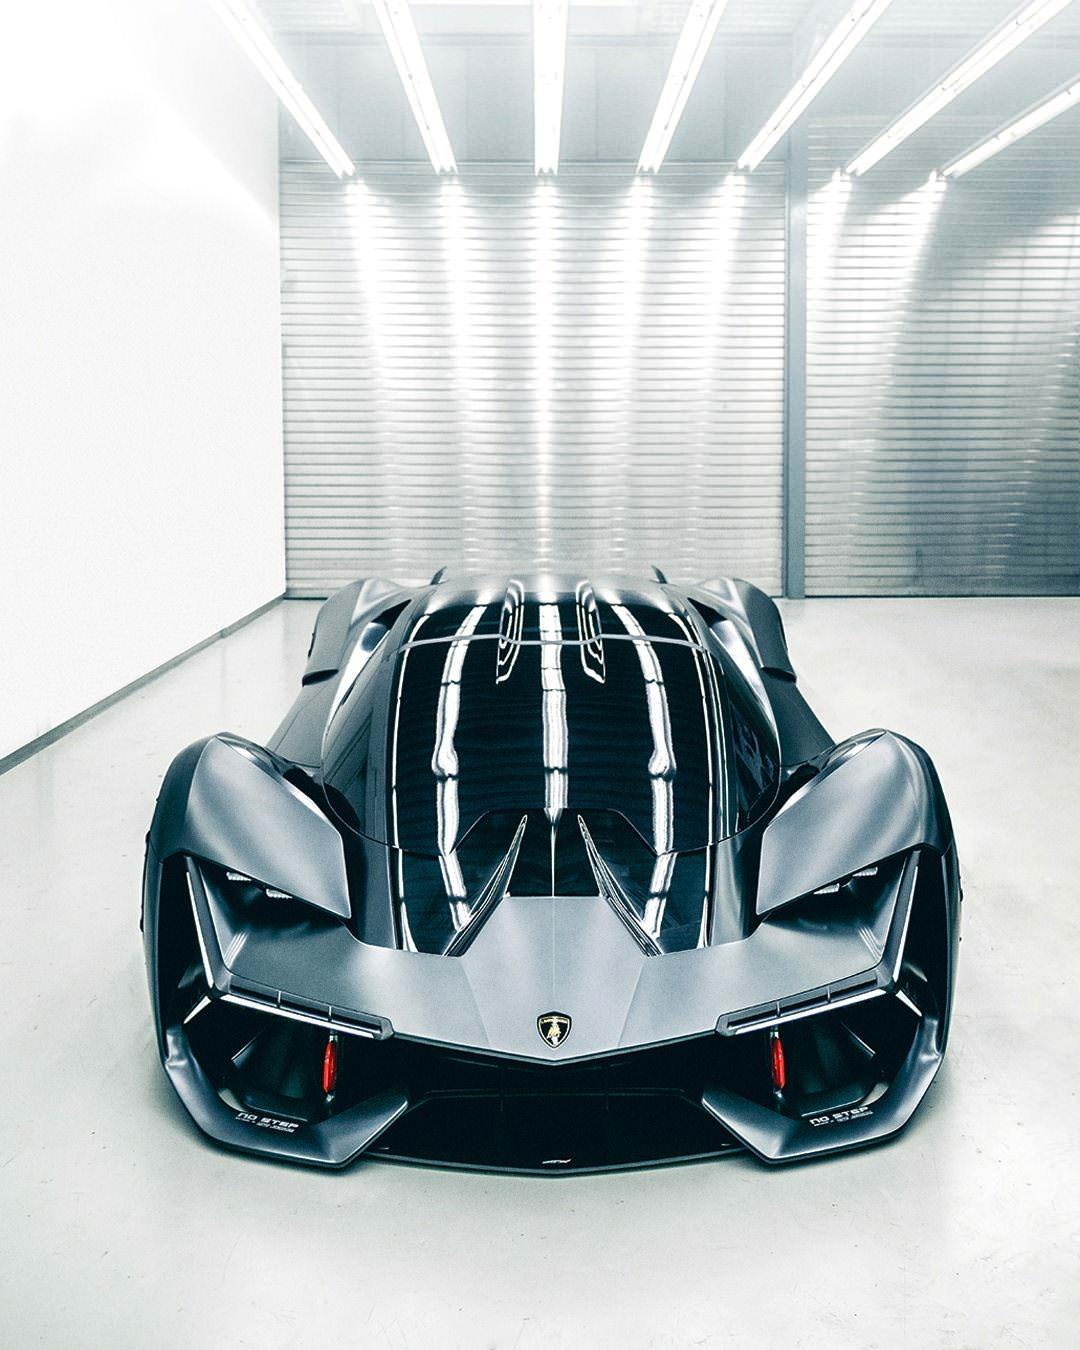 The Lamborghini Terzo Millennio concept